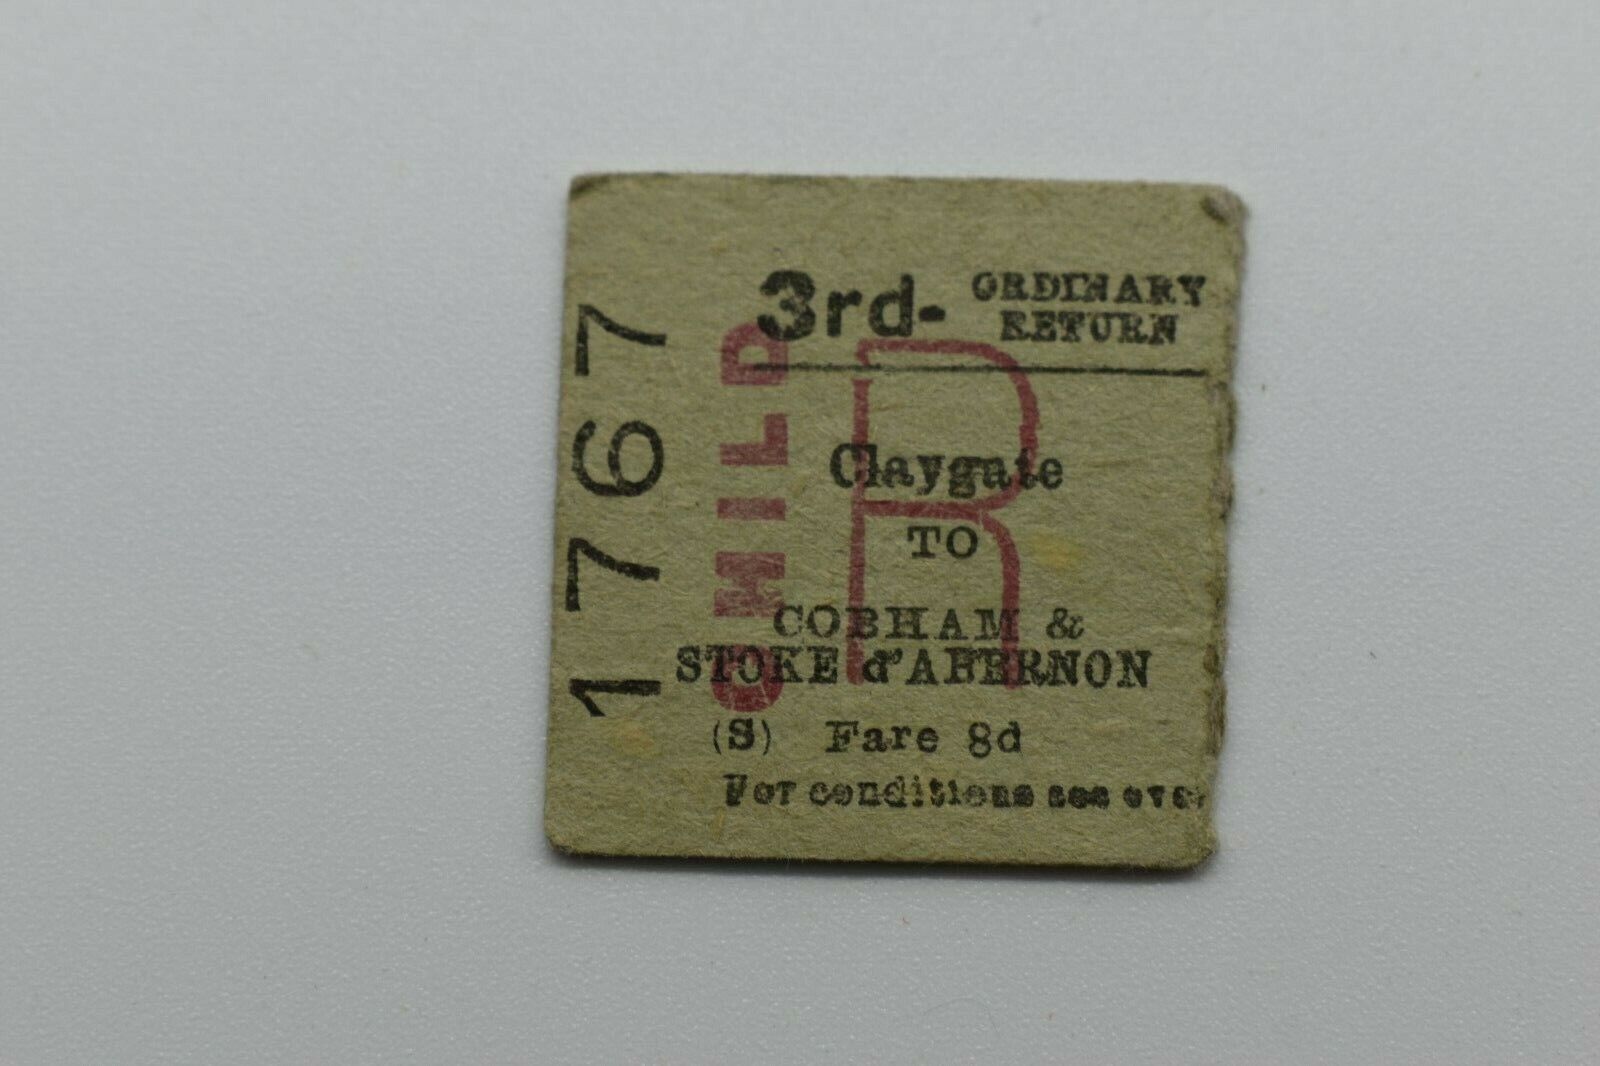 BTC Railway Ticket No 1767 CLAYGATE to COBHAM & STOKE D\'ABERNON 27SE66